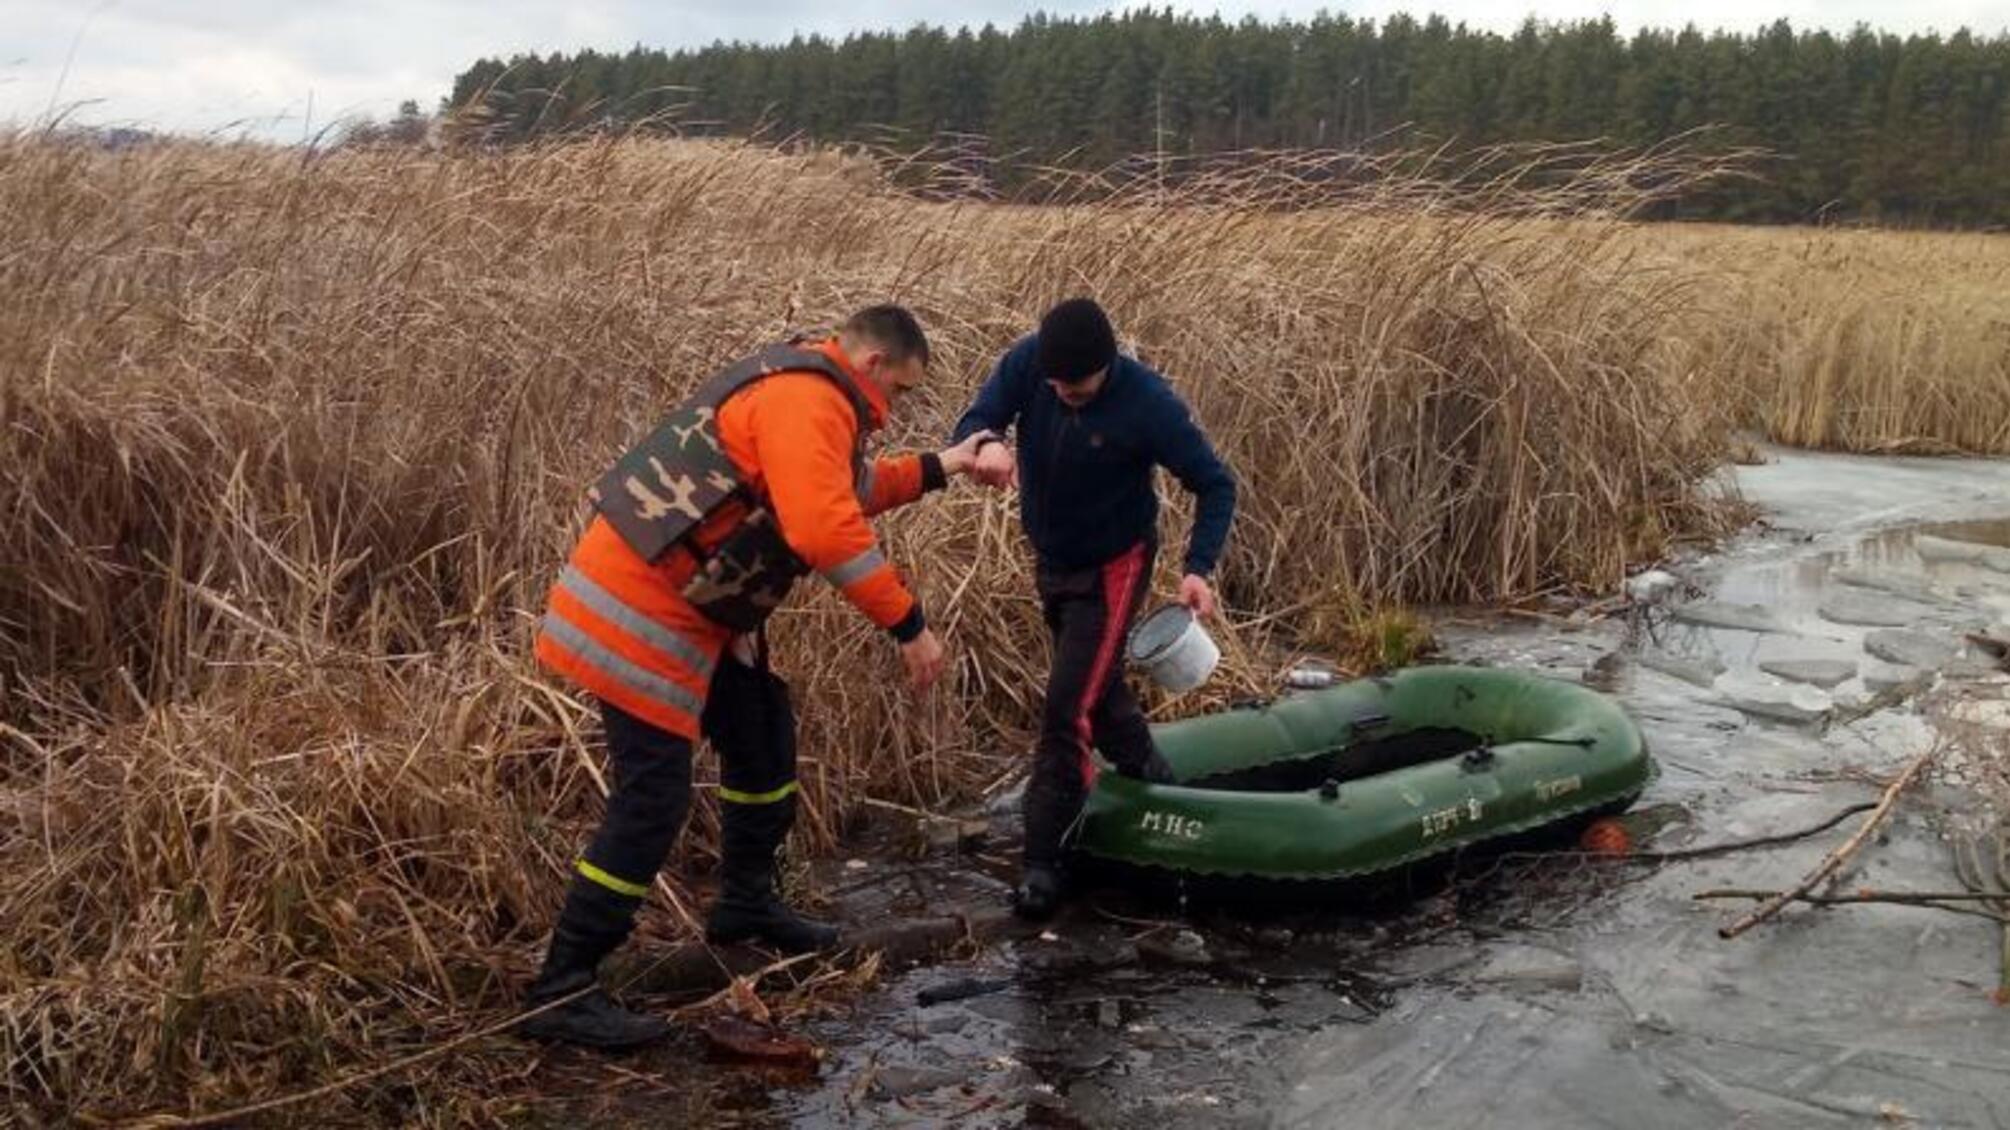 Житомирська область: фахівці ДСНС врятували на льоду трьох осіб, які пішли рибалити